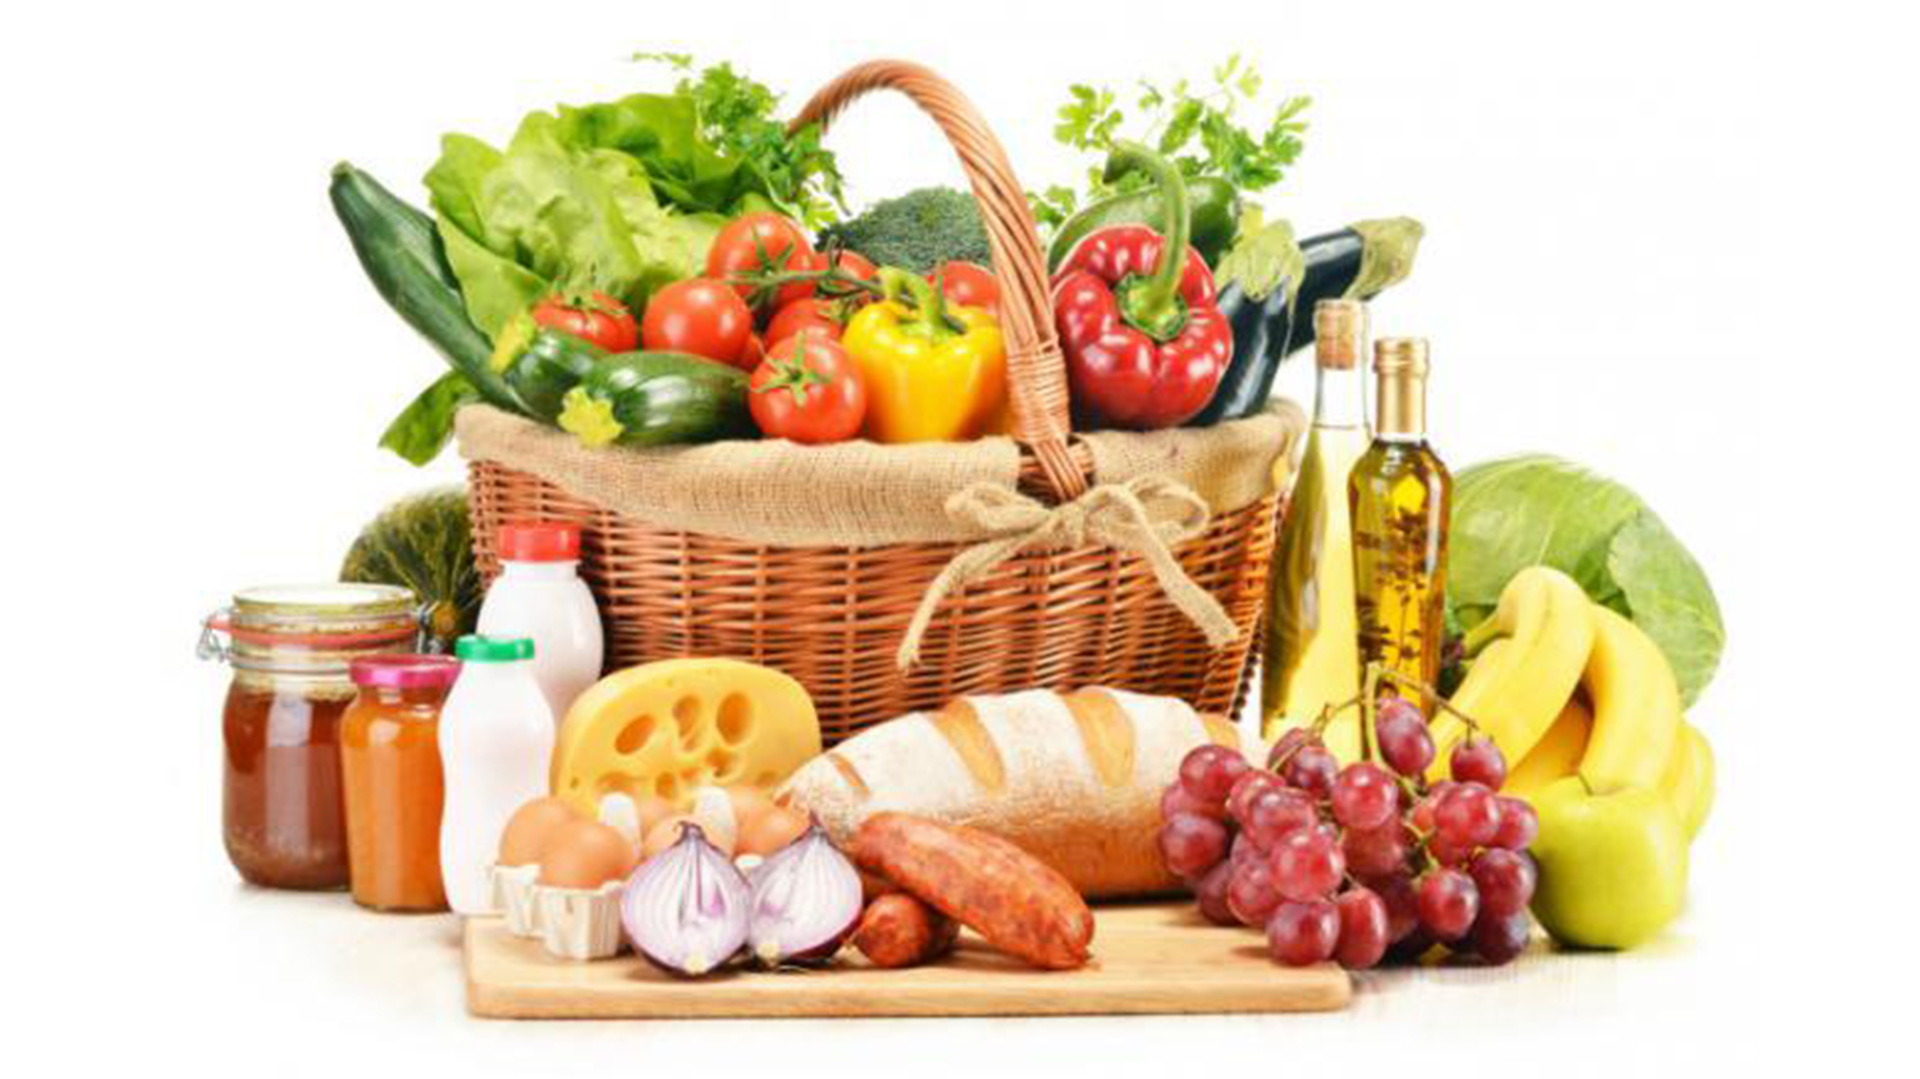 La dieta mediterránea se sigue más en países de Europa, incluye más consumo de frutas, verduras y hortalizas, pescado y aceite de oliva, entre otros productos (Archivo)